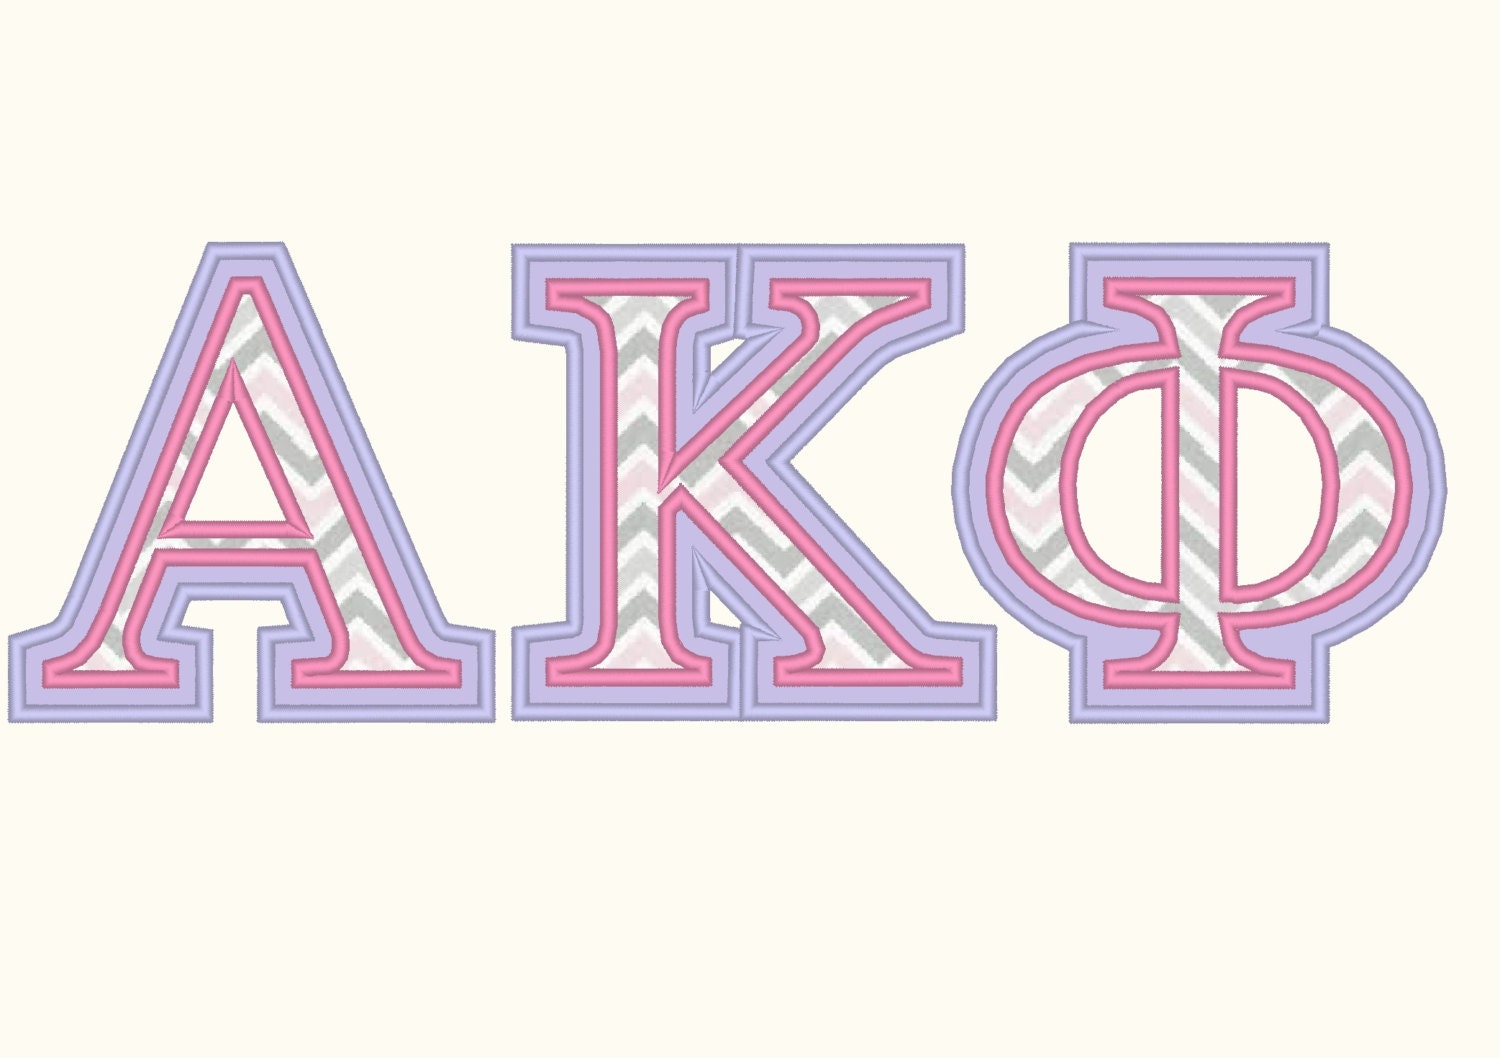 Whole Greek font alphabet ABC letters 2 step applique 2